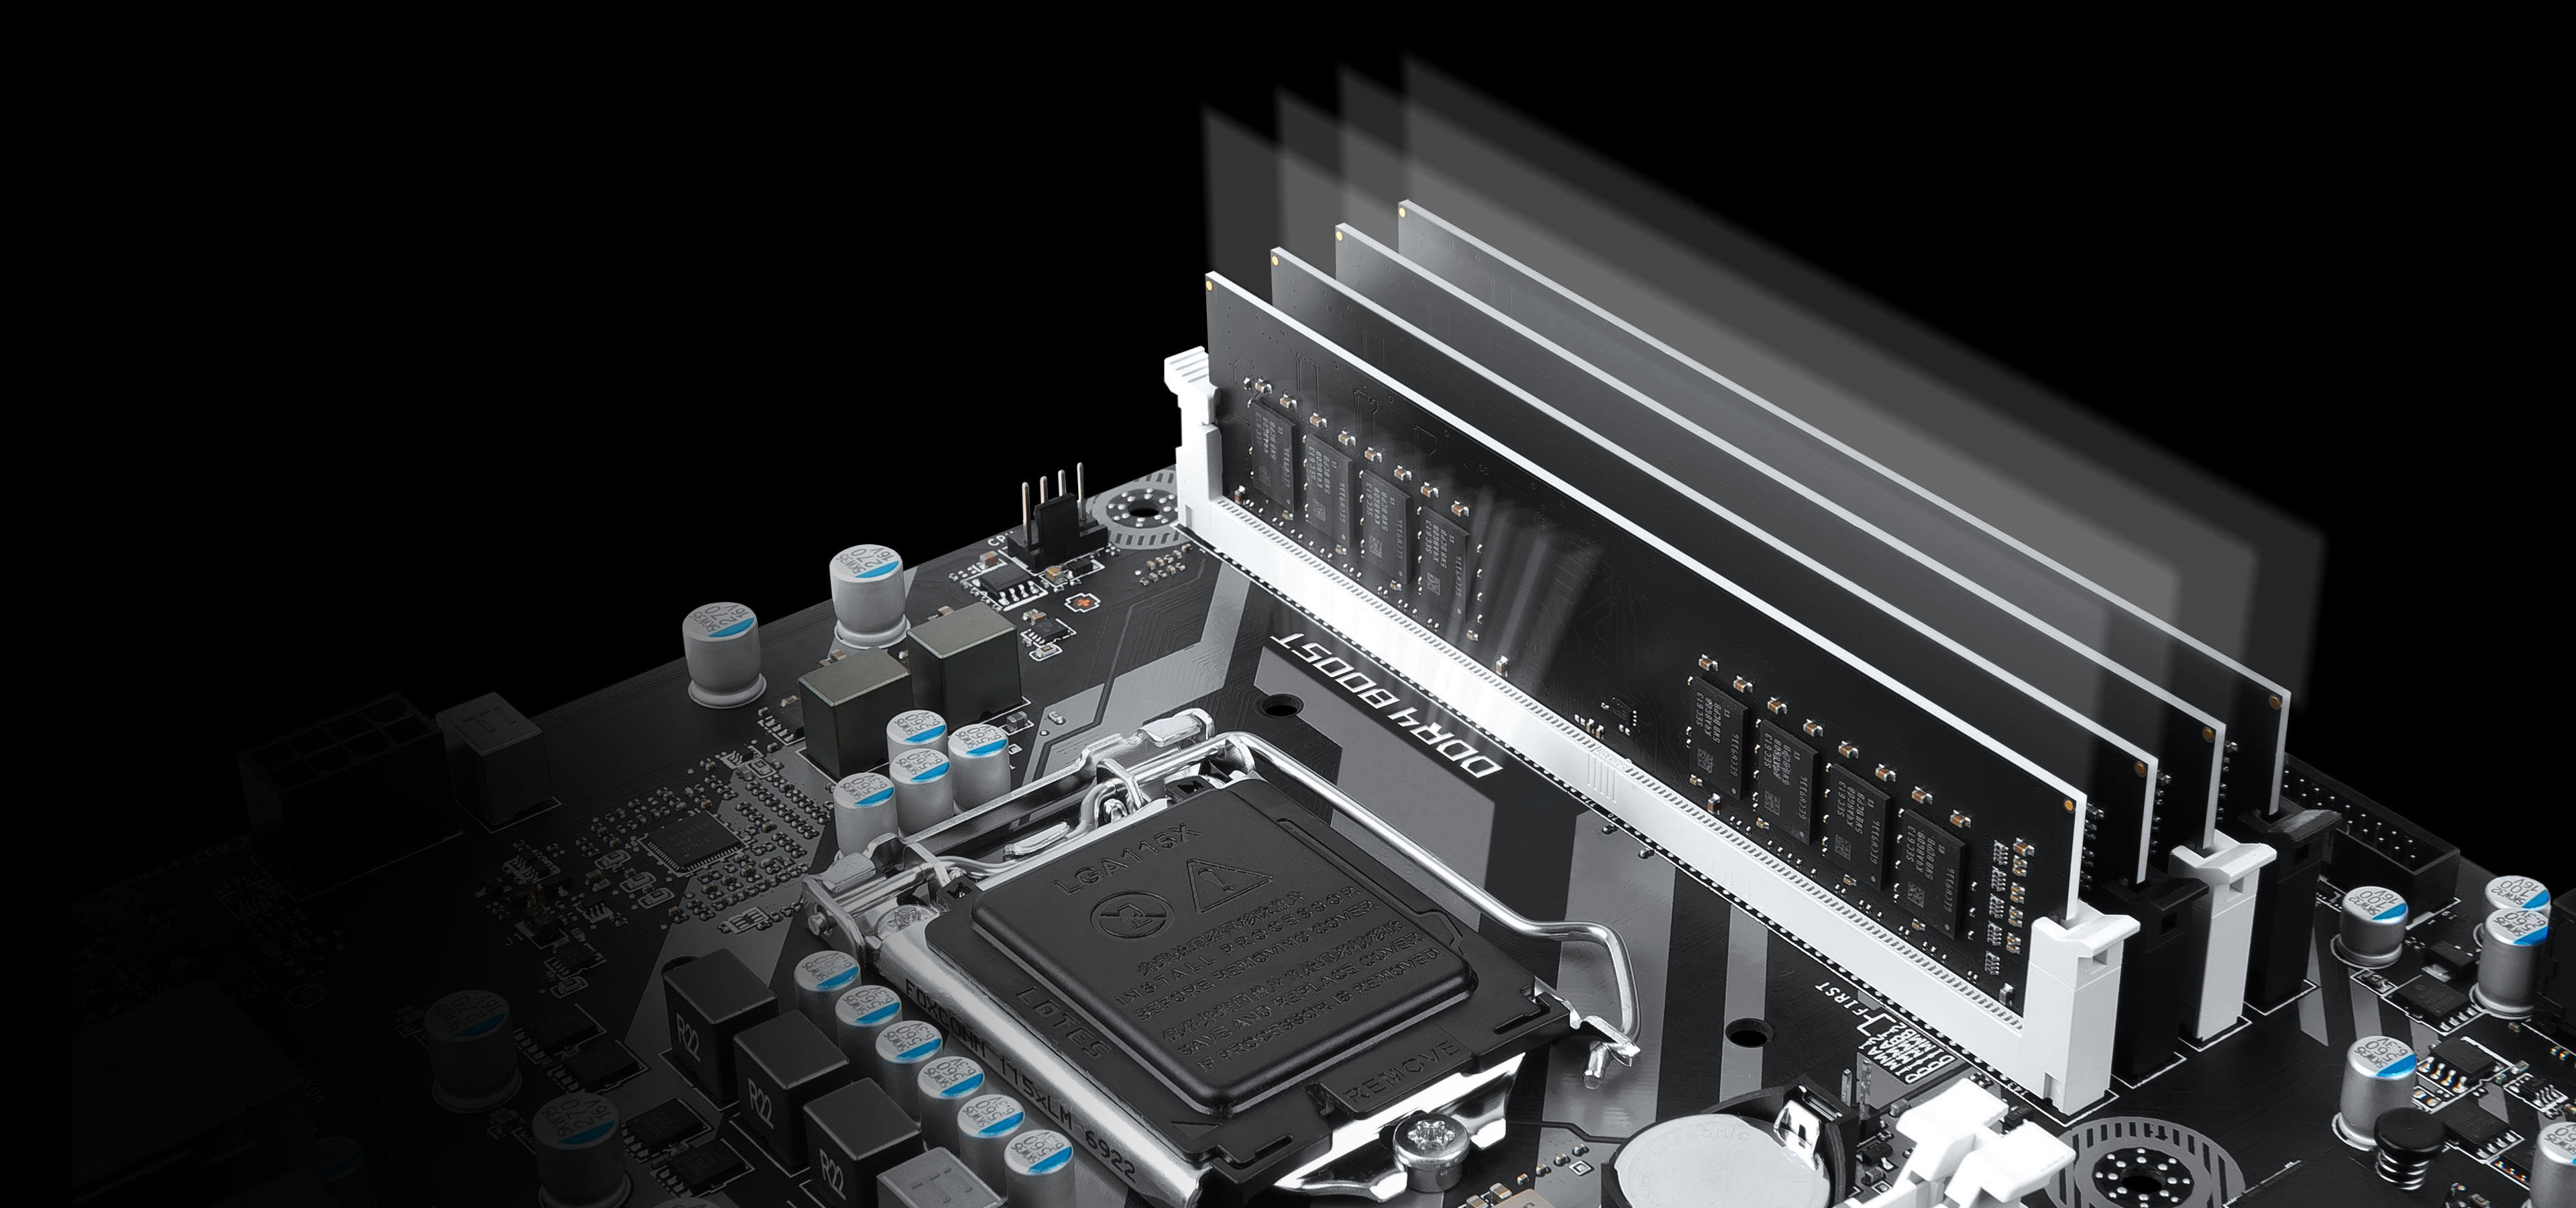 MSI H270M BAZOOKA VR Ready M-ATX Motherboard - Black (Intel Core i3/i5/i7 Processor, LGA 1151, Dual Channel DDR4, USB 3.1, PCI-E 3.0, PCI-E x1, Sata 6 GB)